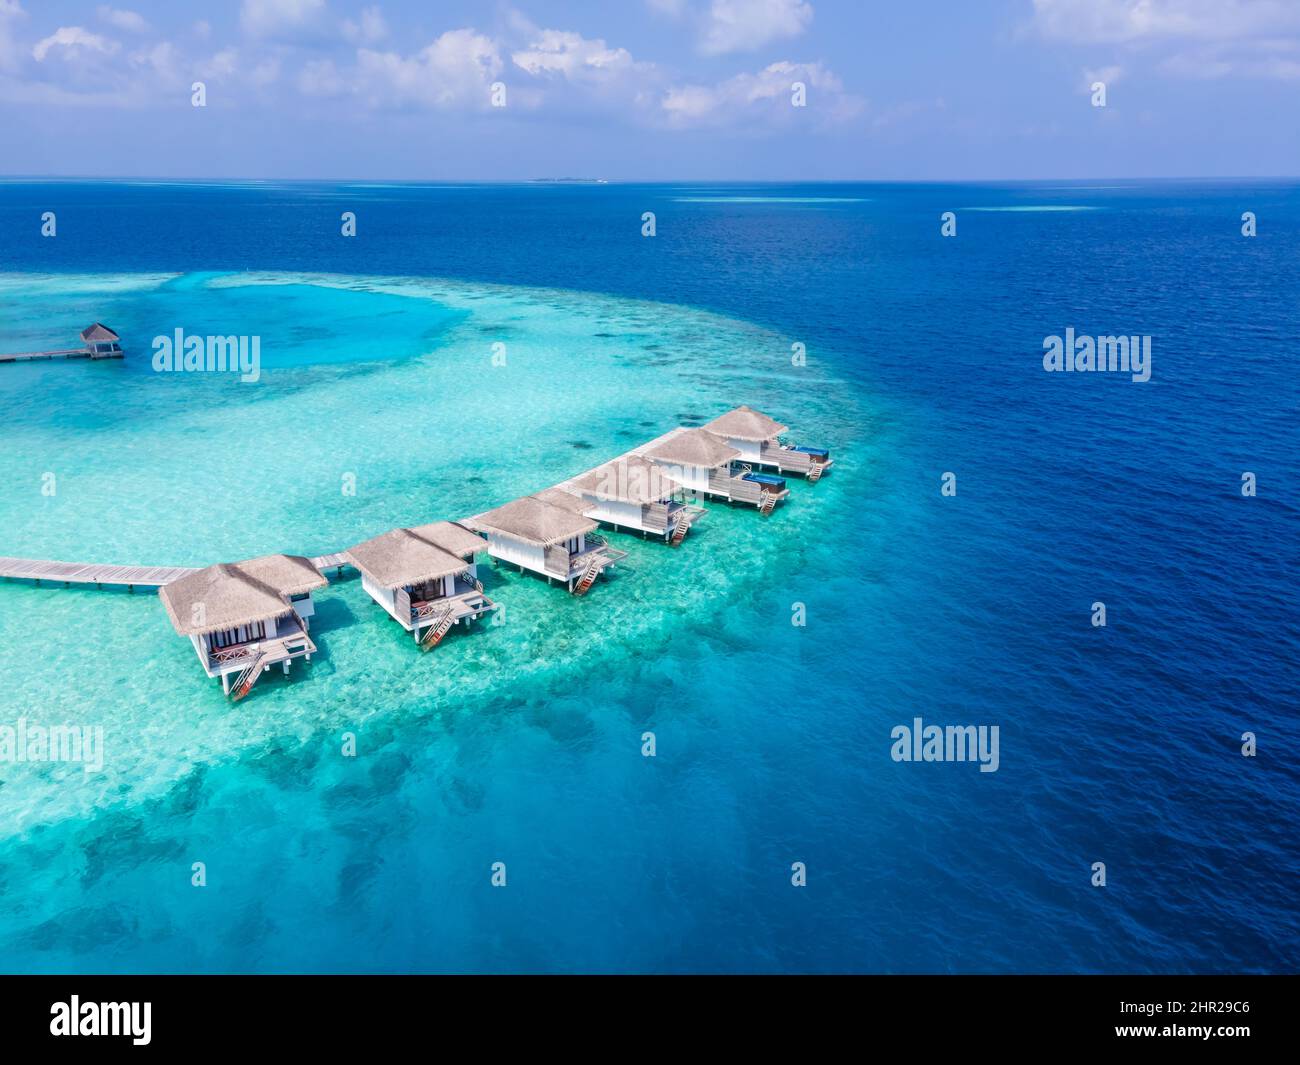 Villas sur l'île de l'atoll tropical pour vacances voyage et lune de miel. Hôtel de luxe aux Maldives ou aux Caraïbes avec mer turquoise Banque D'Images